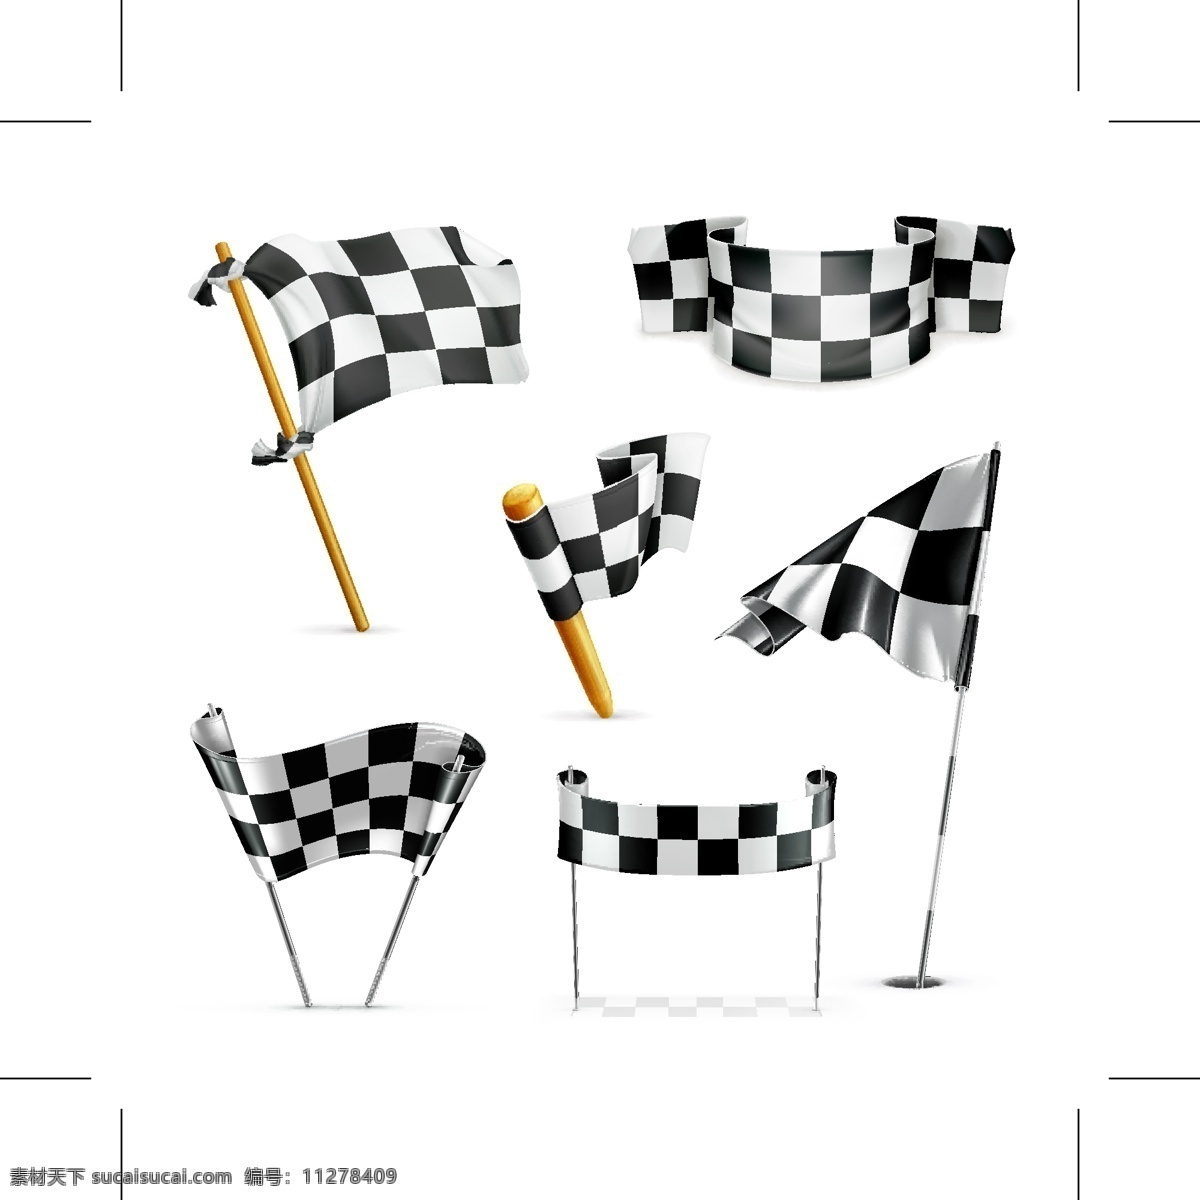 黑白 格子 旗帜 矢量图 各种 旗杆 图标 矢量素材 设计素材